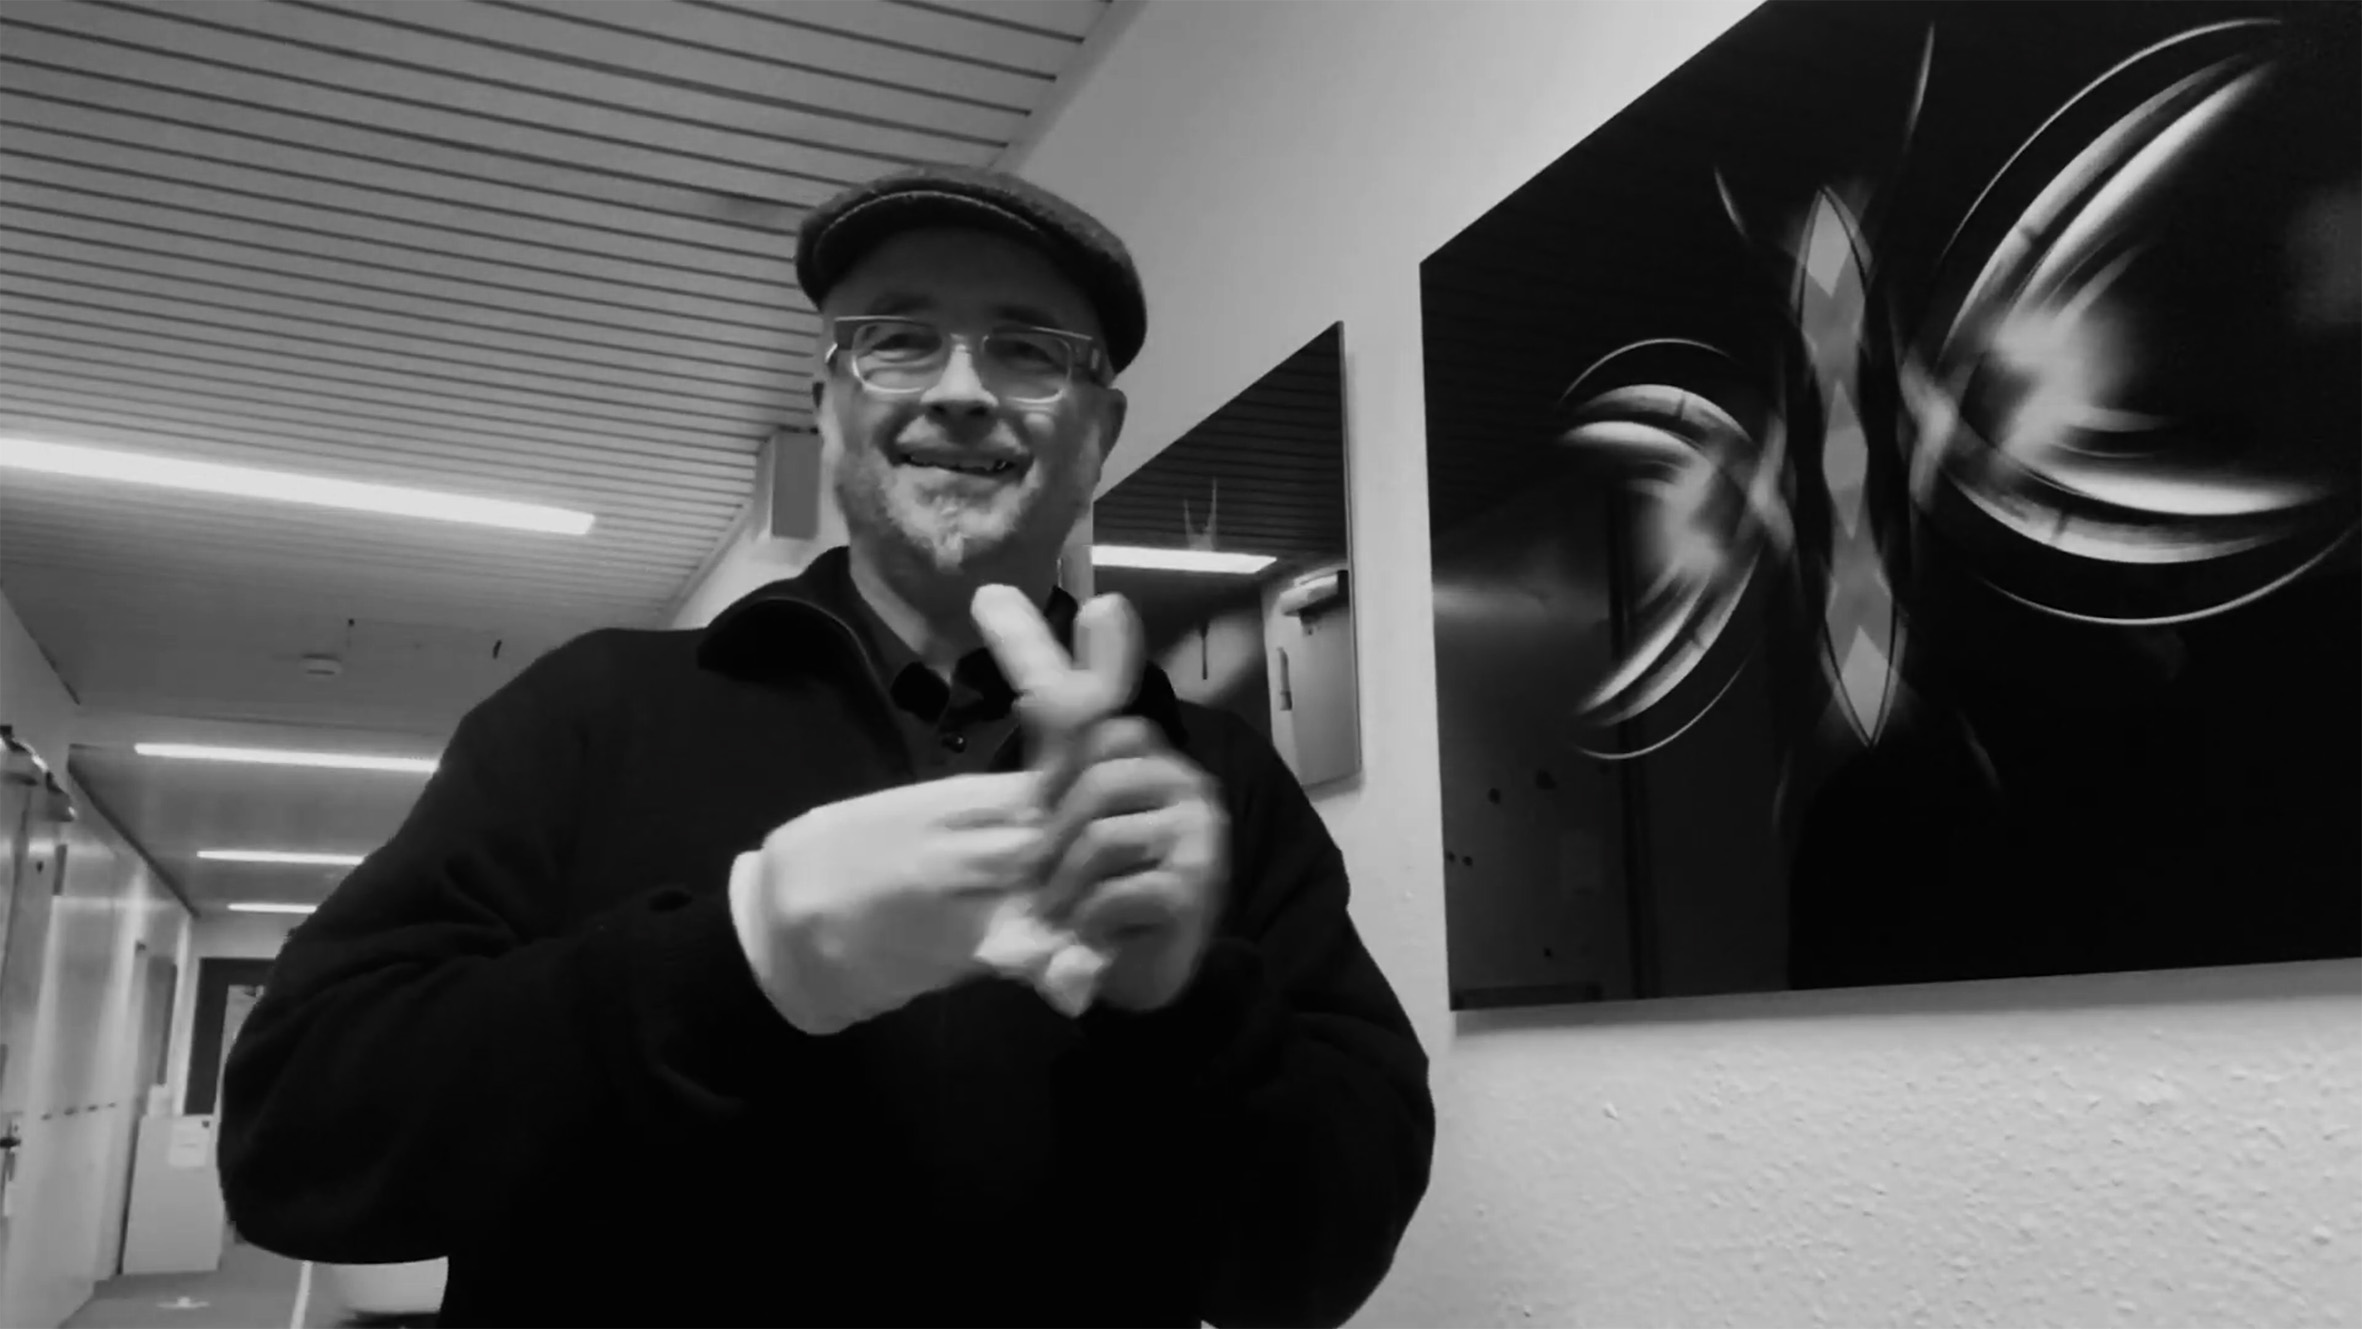 Fotoausstellung Refraktion von Frank Sonnenberg im Journalistenzentrum Herne